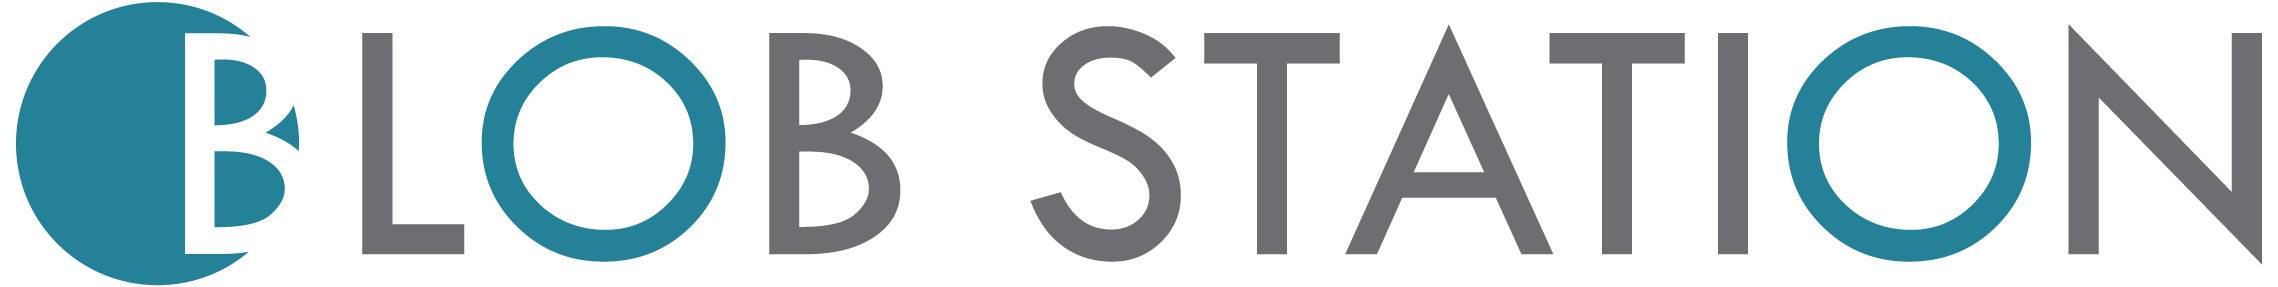 Blobstation logo